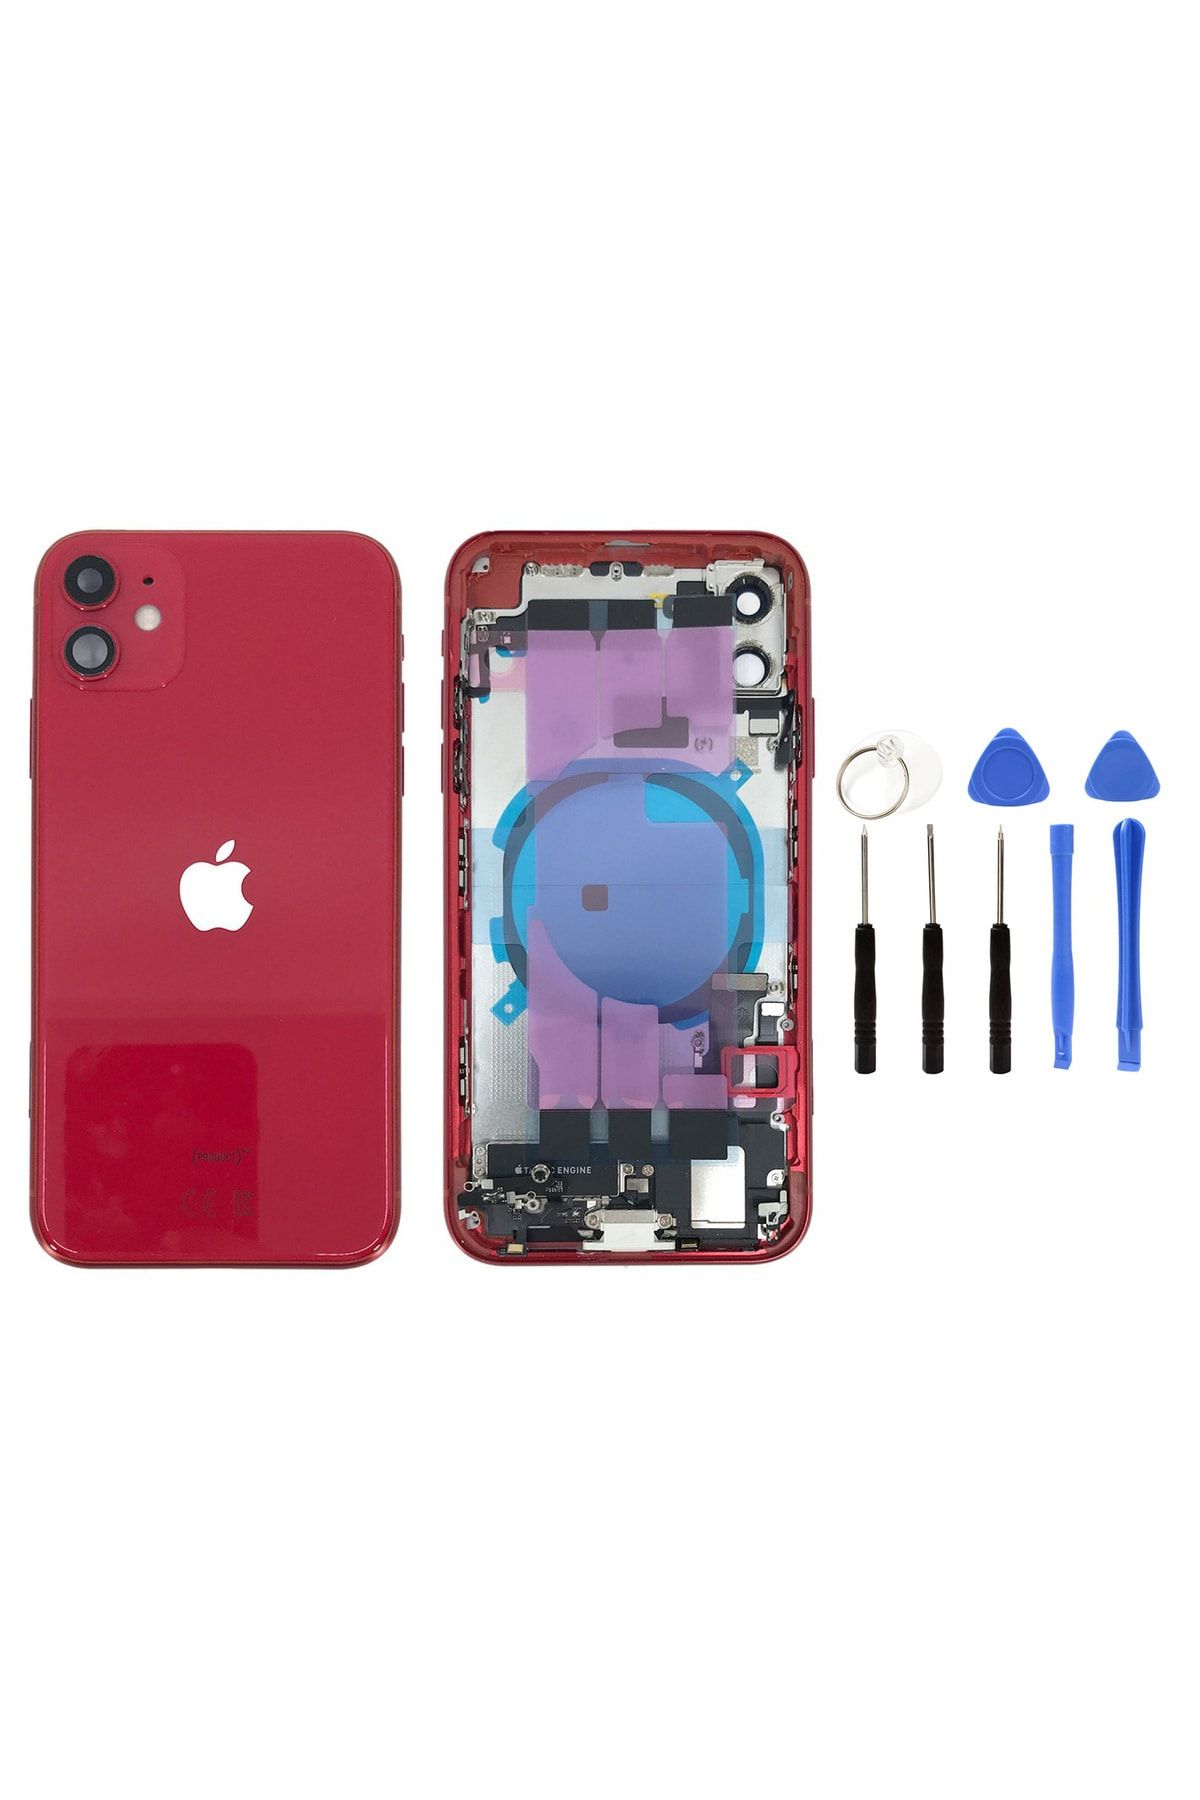 instatech Apple Iphone 11 Dolu Kasa + Montaj Seti Hediye - Kırmızı